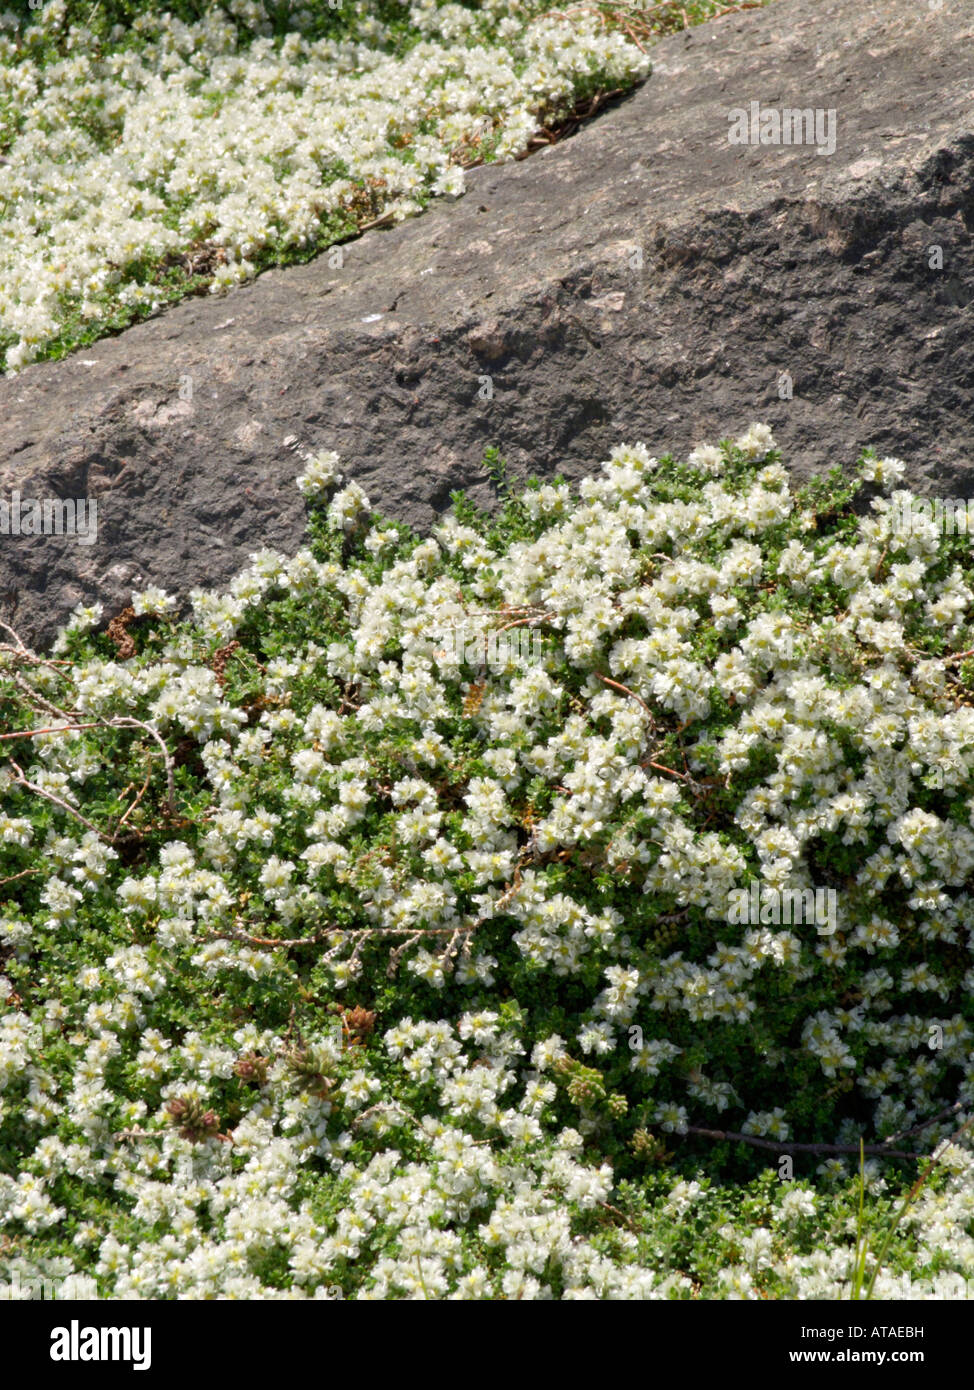 Paronychia kapela subsp. serpyllifolia Stock Photo